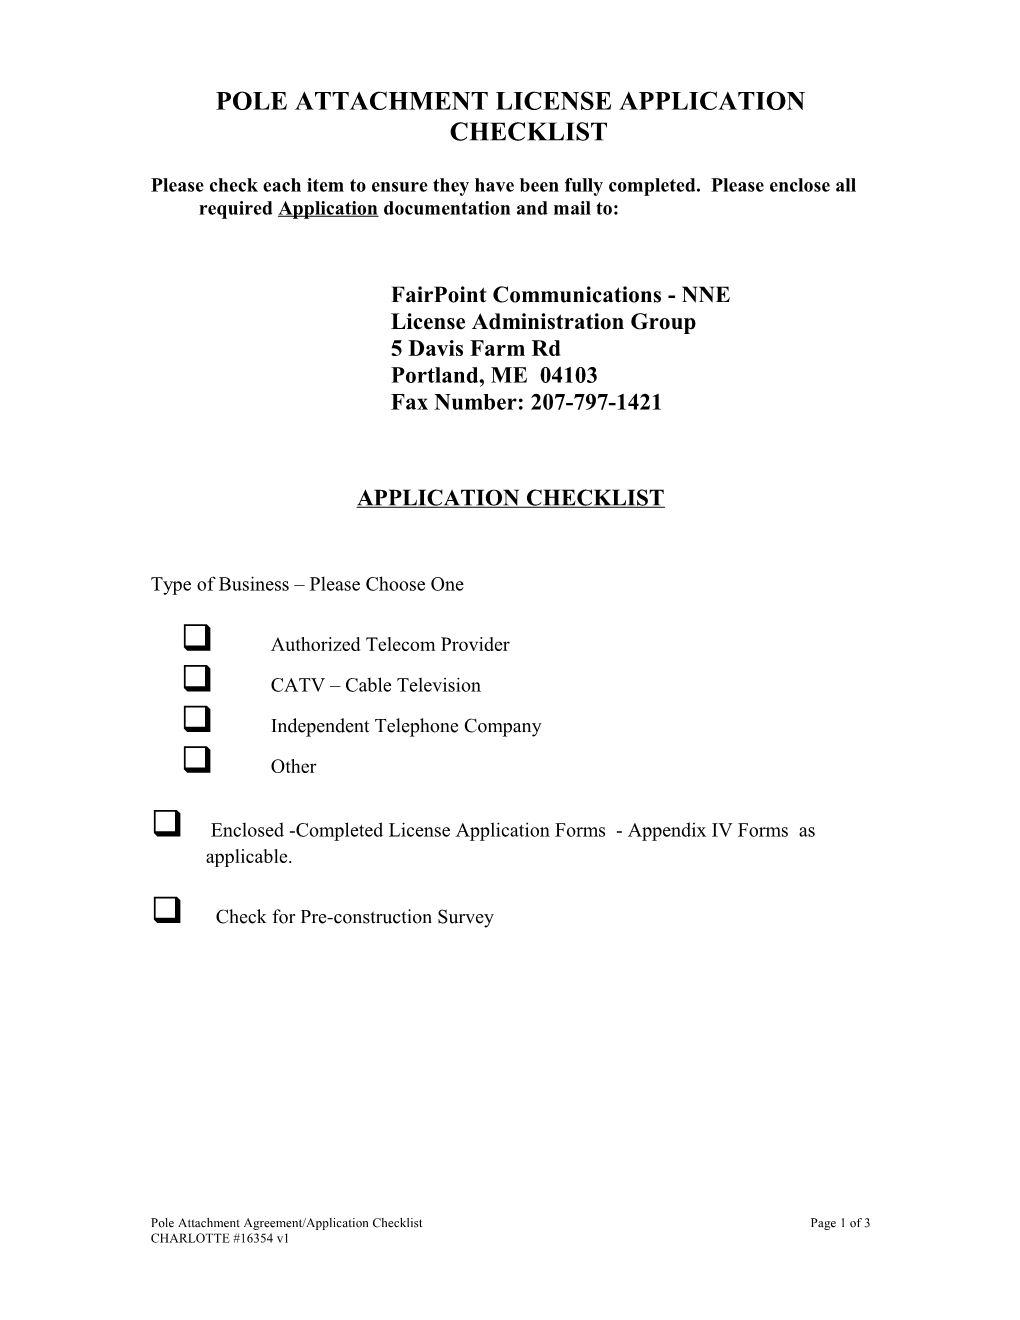 Pole Attachment License Application Checklist